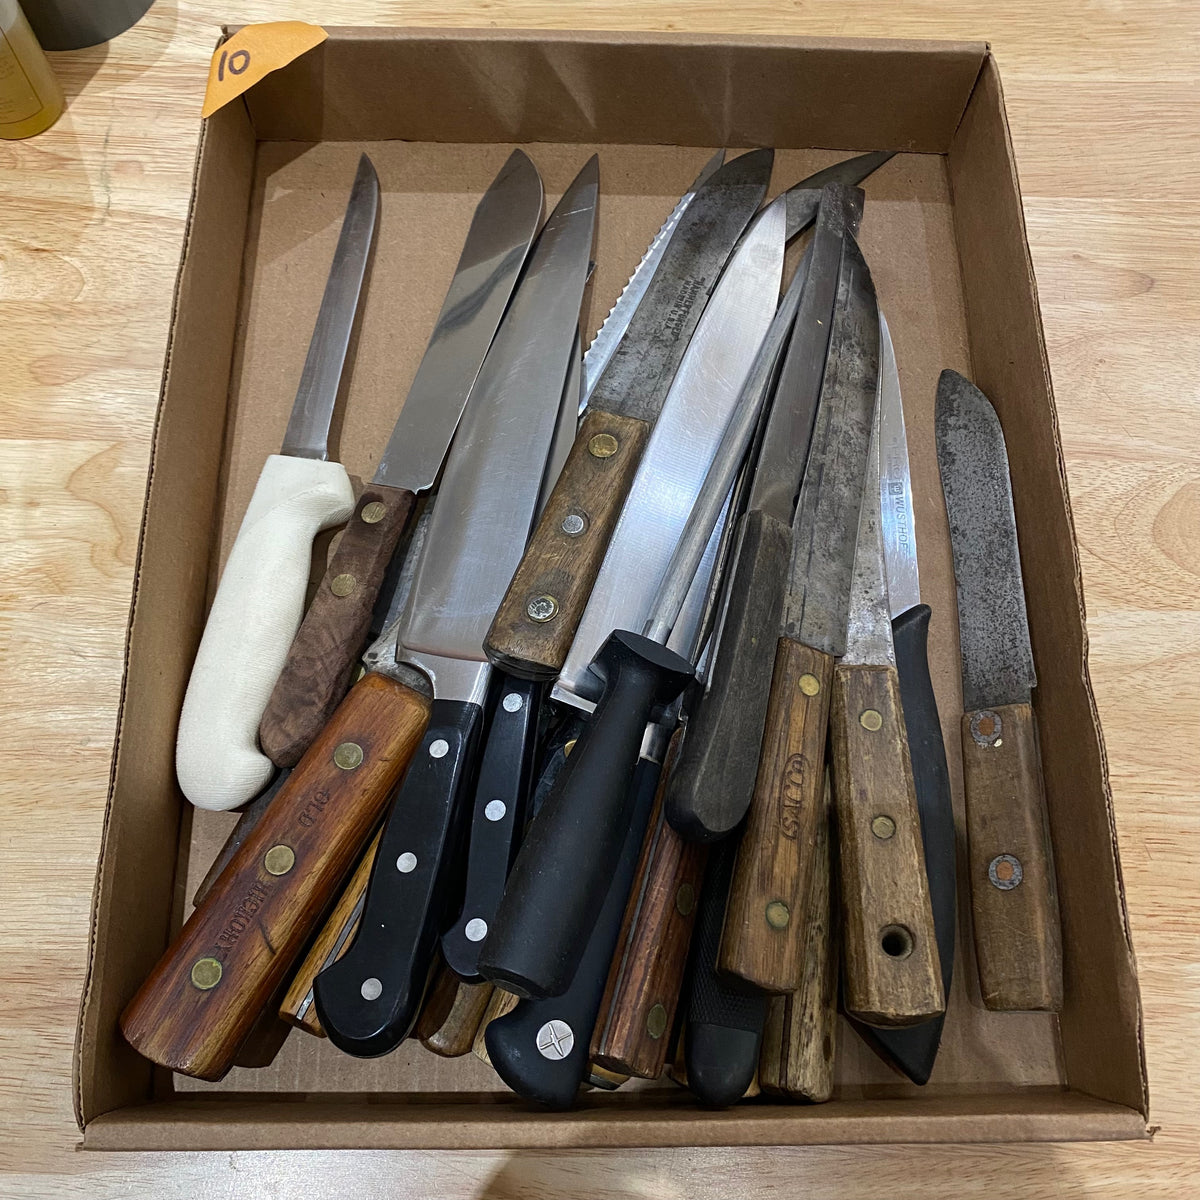 Bargain Bin Knife - $10 each